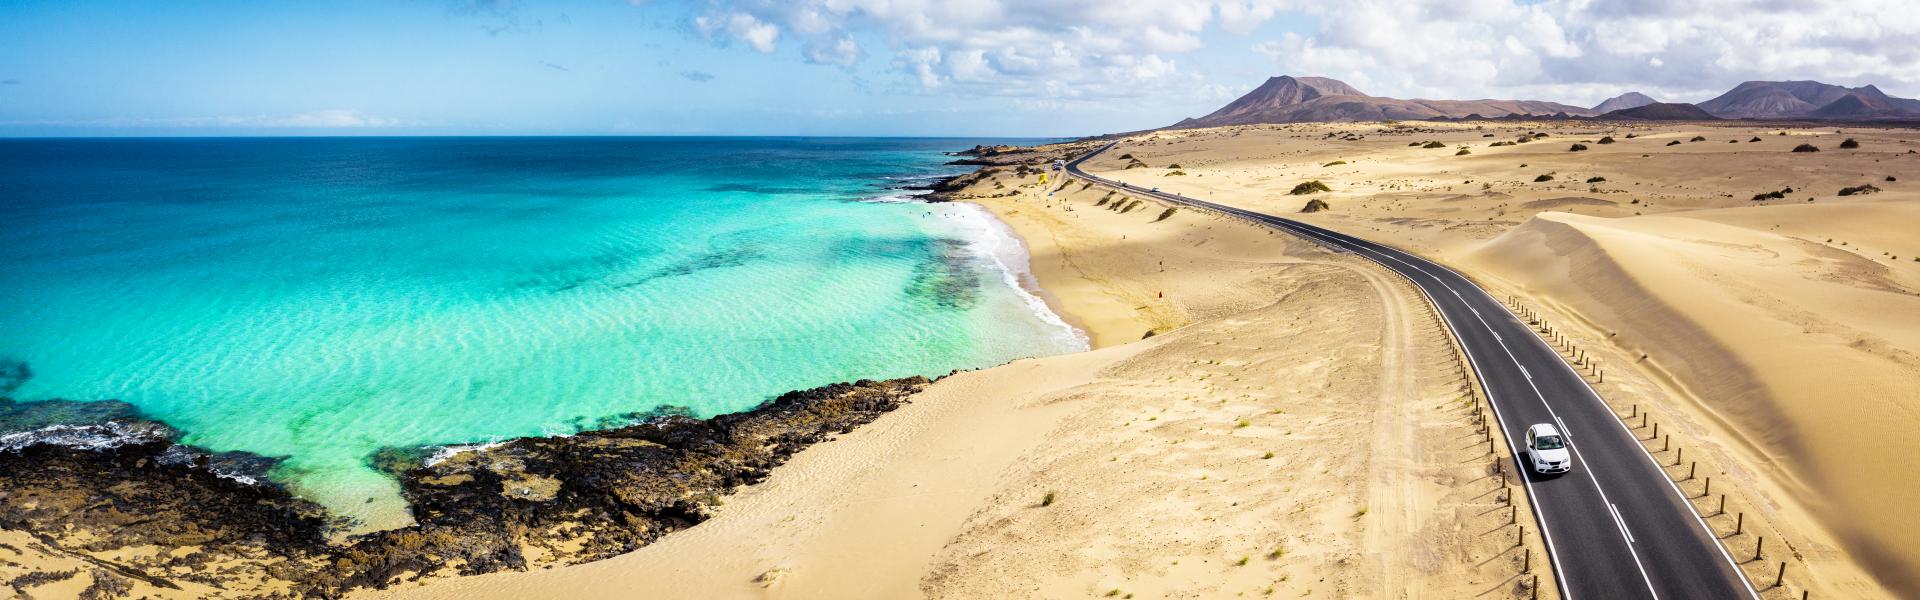 Fuerteventura Scenic View